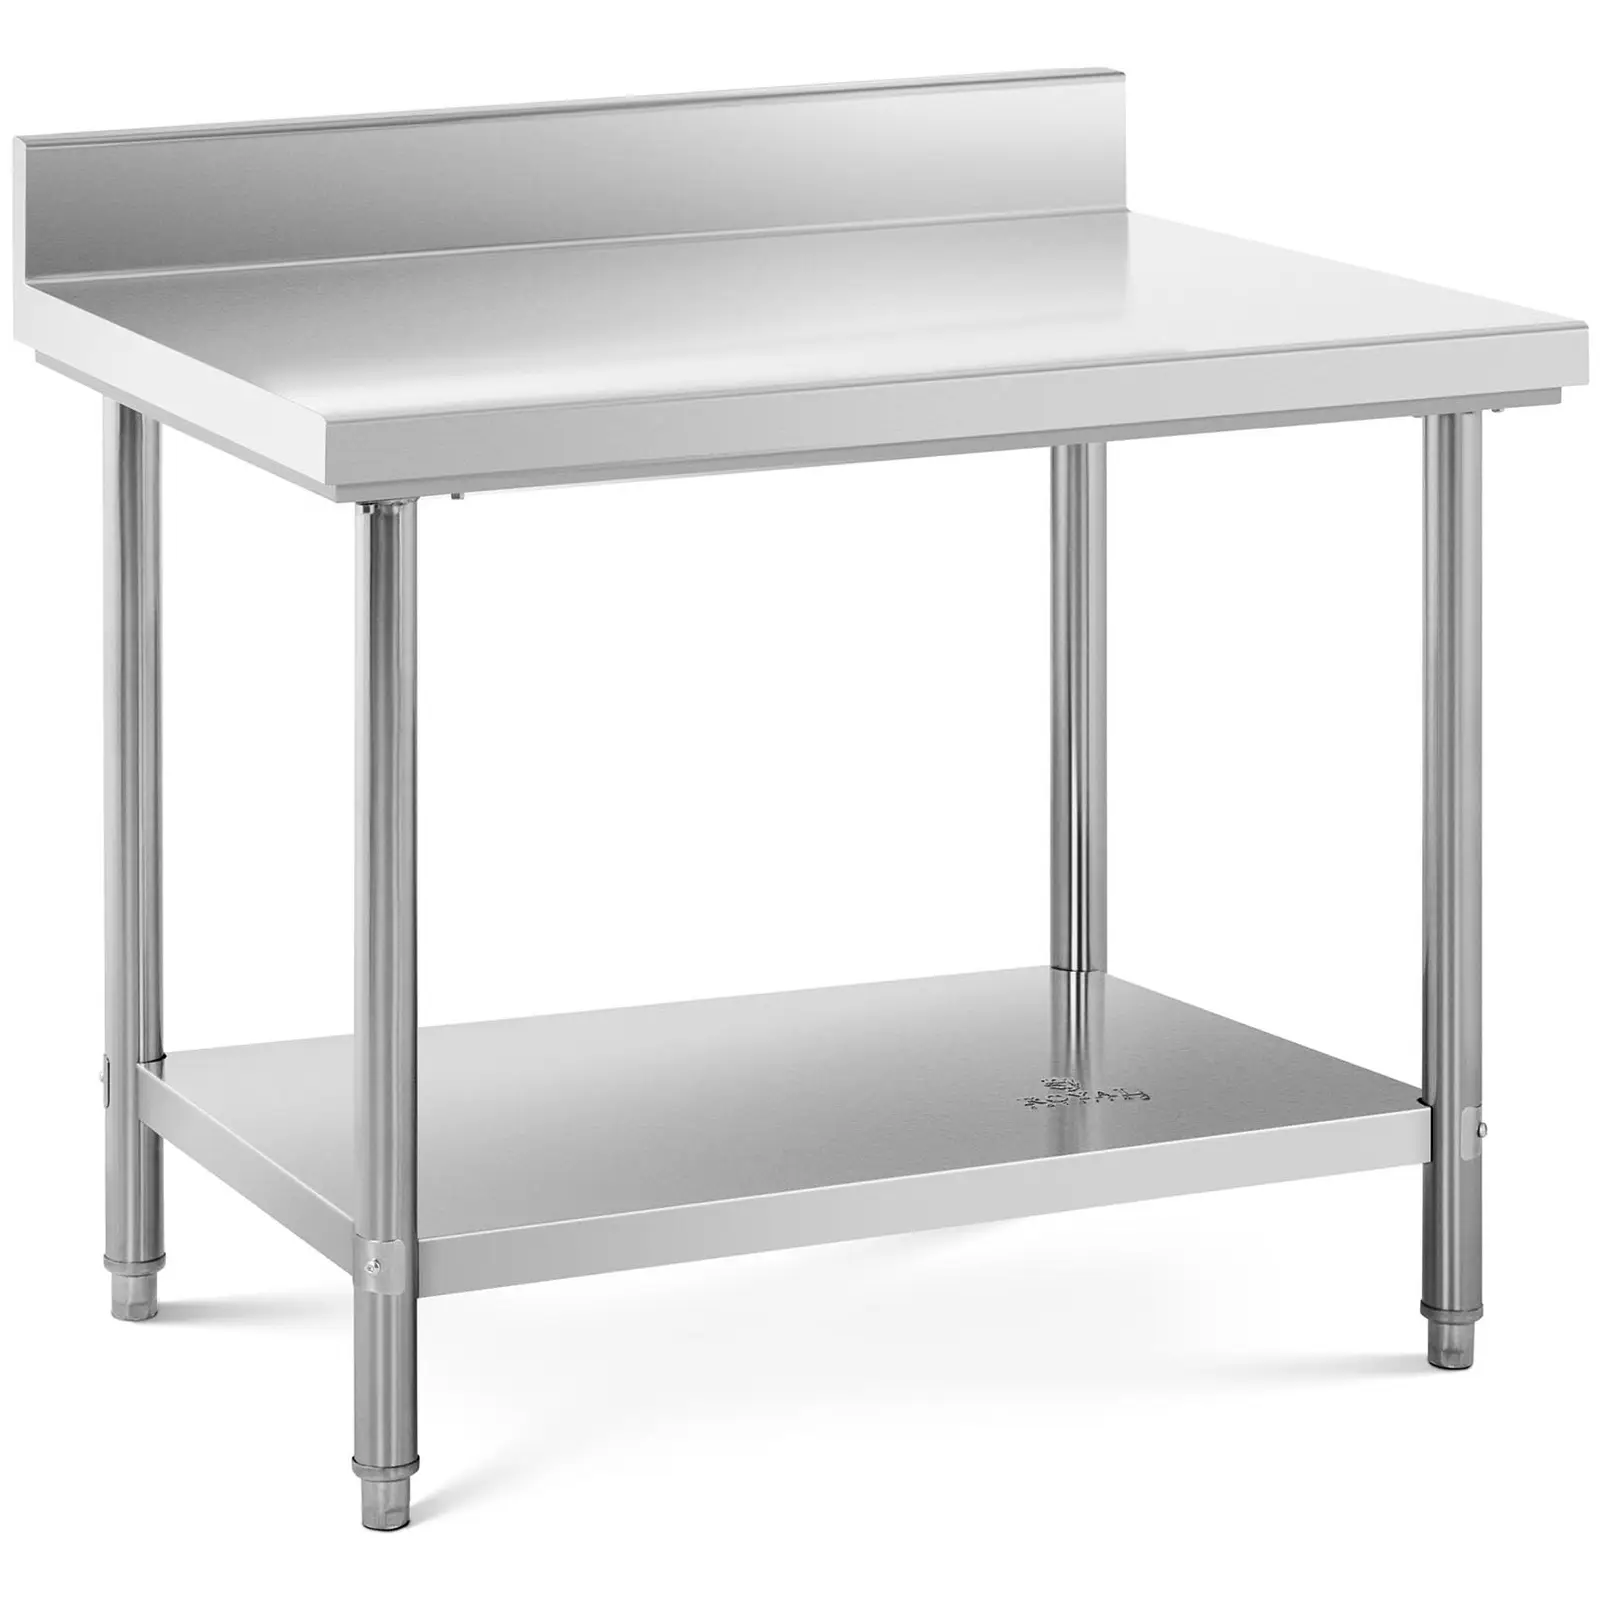 Pracovní stůl z ušlechtilé oceli 100 x 70 cm lem nosnost 190 kg - Pracovní stoly Royal Catering